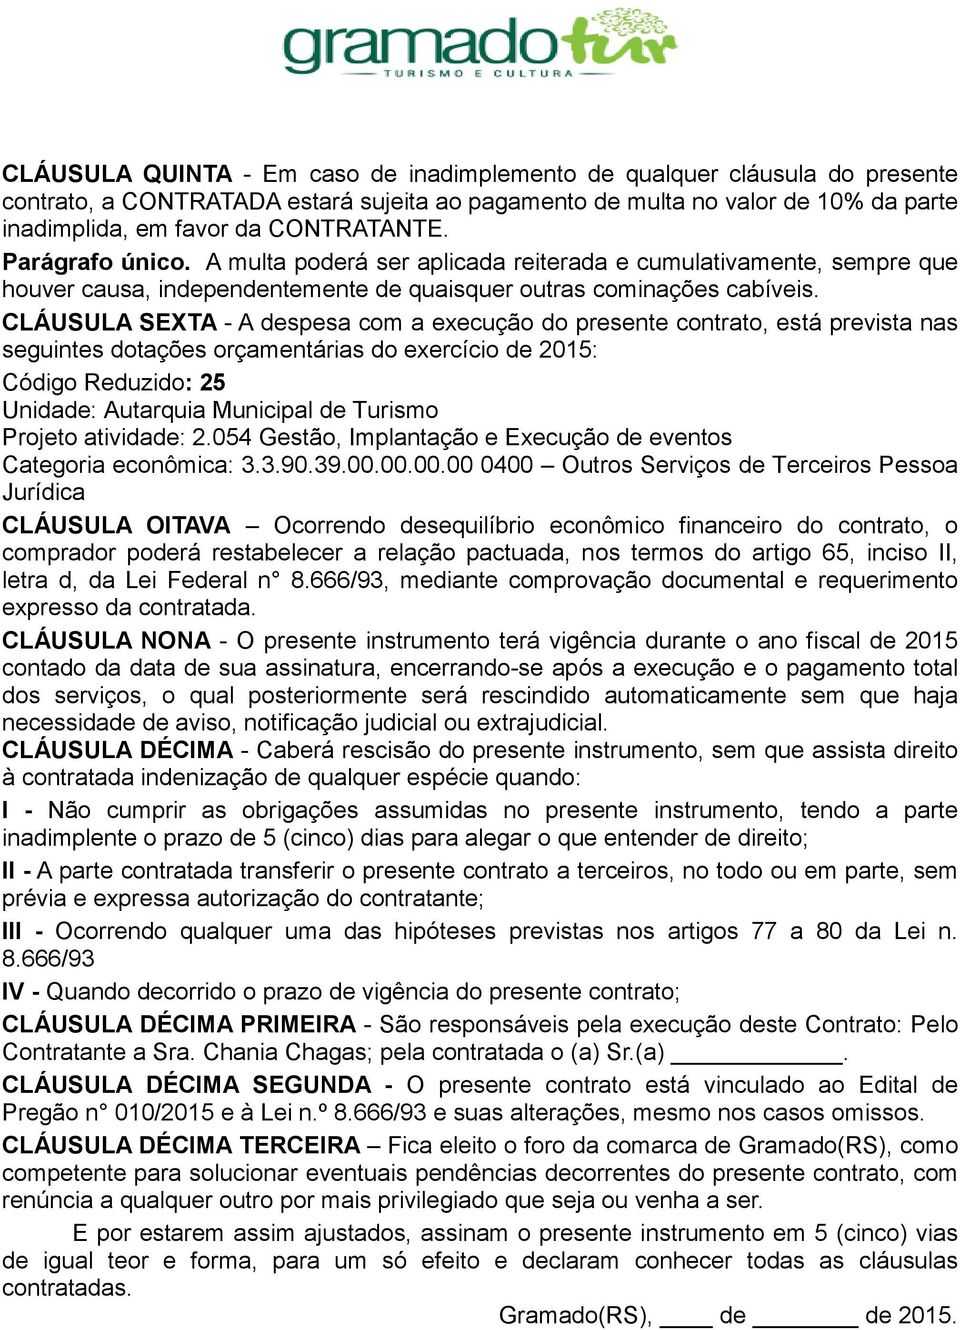 CLÁUSULA SEXTA - A despesa com a execução do presente contrato, está prevista nas seguintes dotações orçamentárias do exercício de 2015: Código Reduzido: 25 Unidade: Autarquia Municipal de Turismo